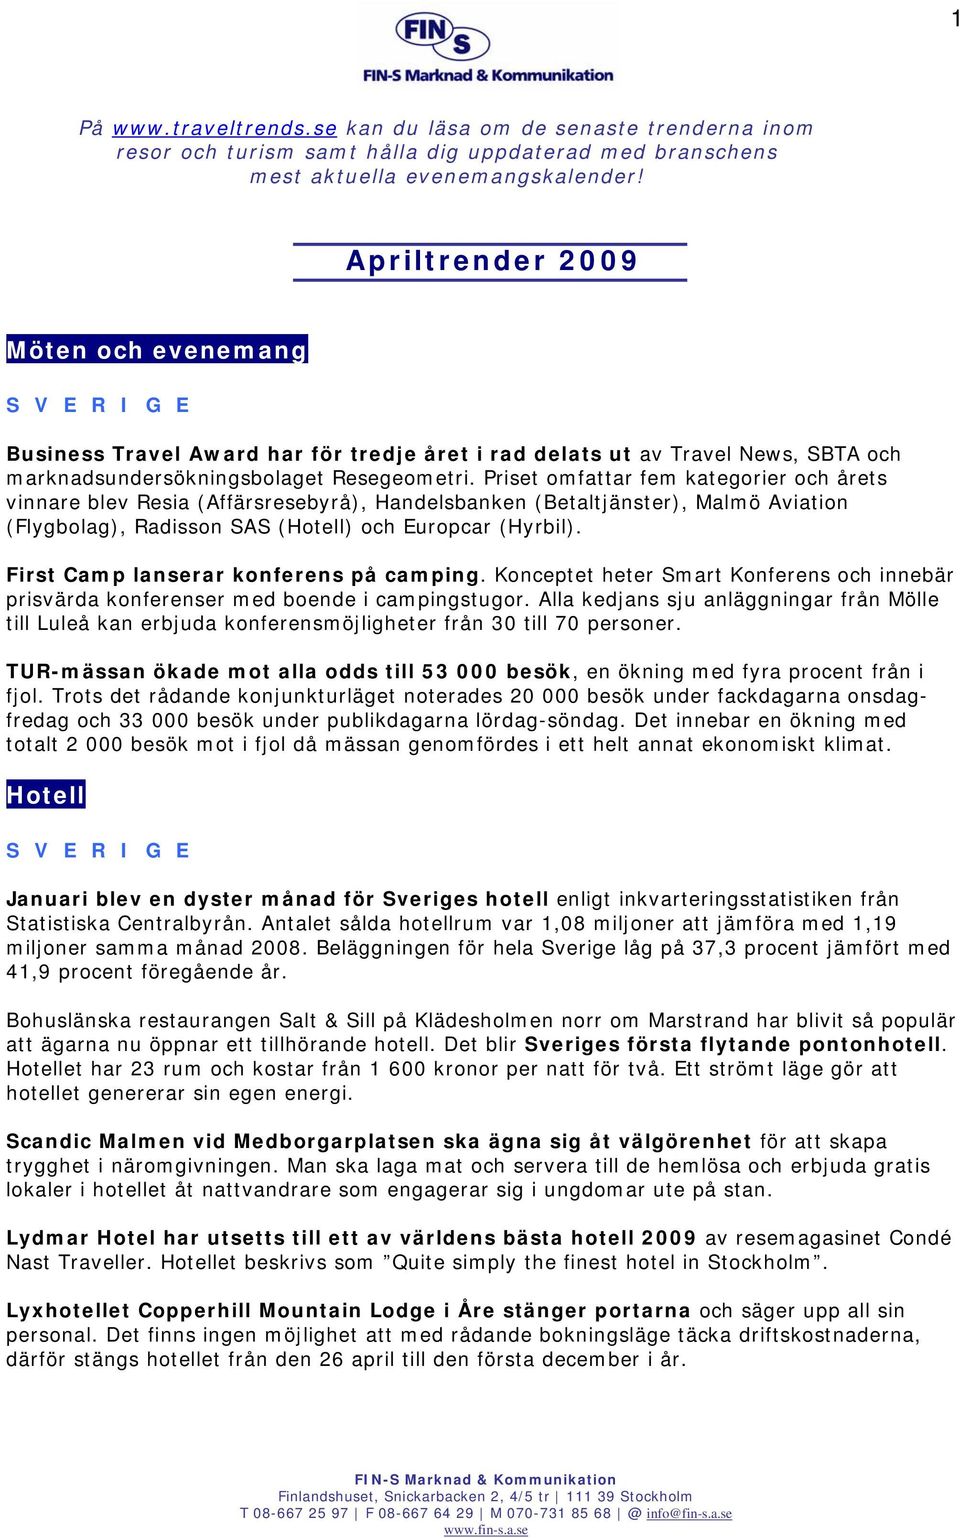 Priset omfattar fem kategorier och årets vinnare blev Resia (Affärsresebyrå), Handelsbanken (Betaltjänster), Malmö Aviation (Flygbolag), Radisson SAS (Hotell) och Europcar (Hyrbil).